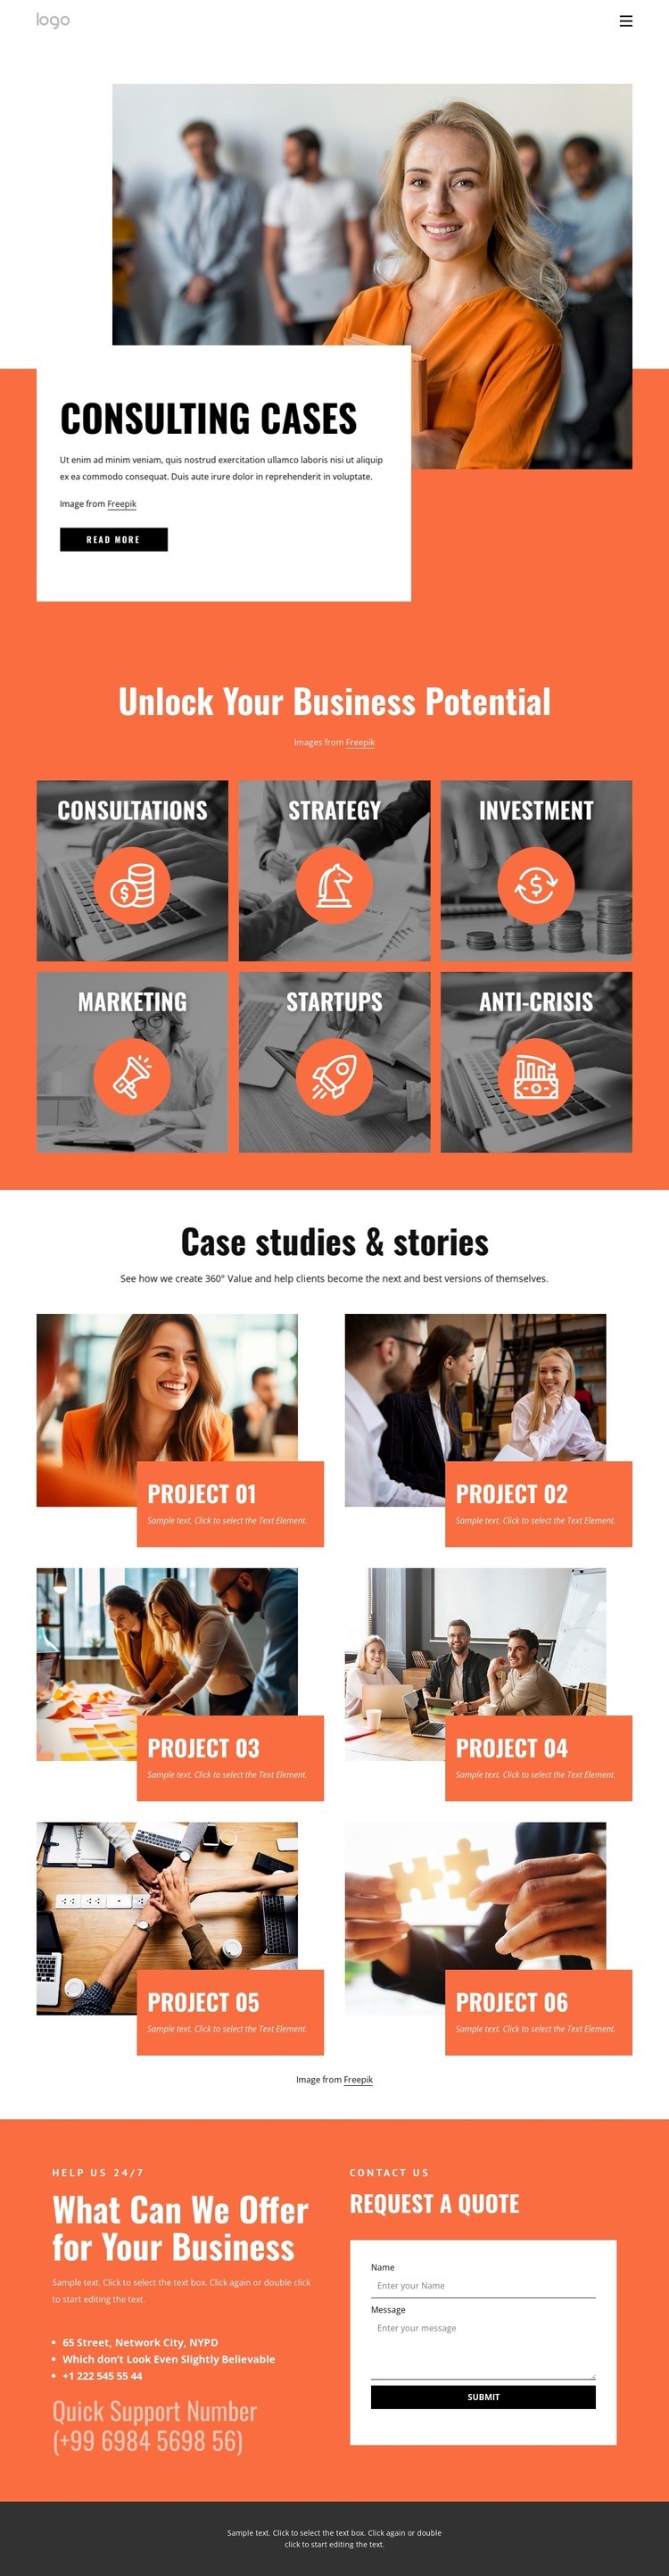 Client success stories Web Page Design